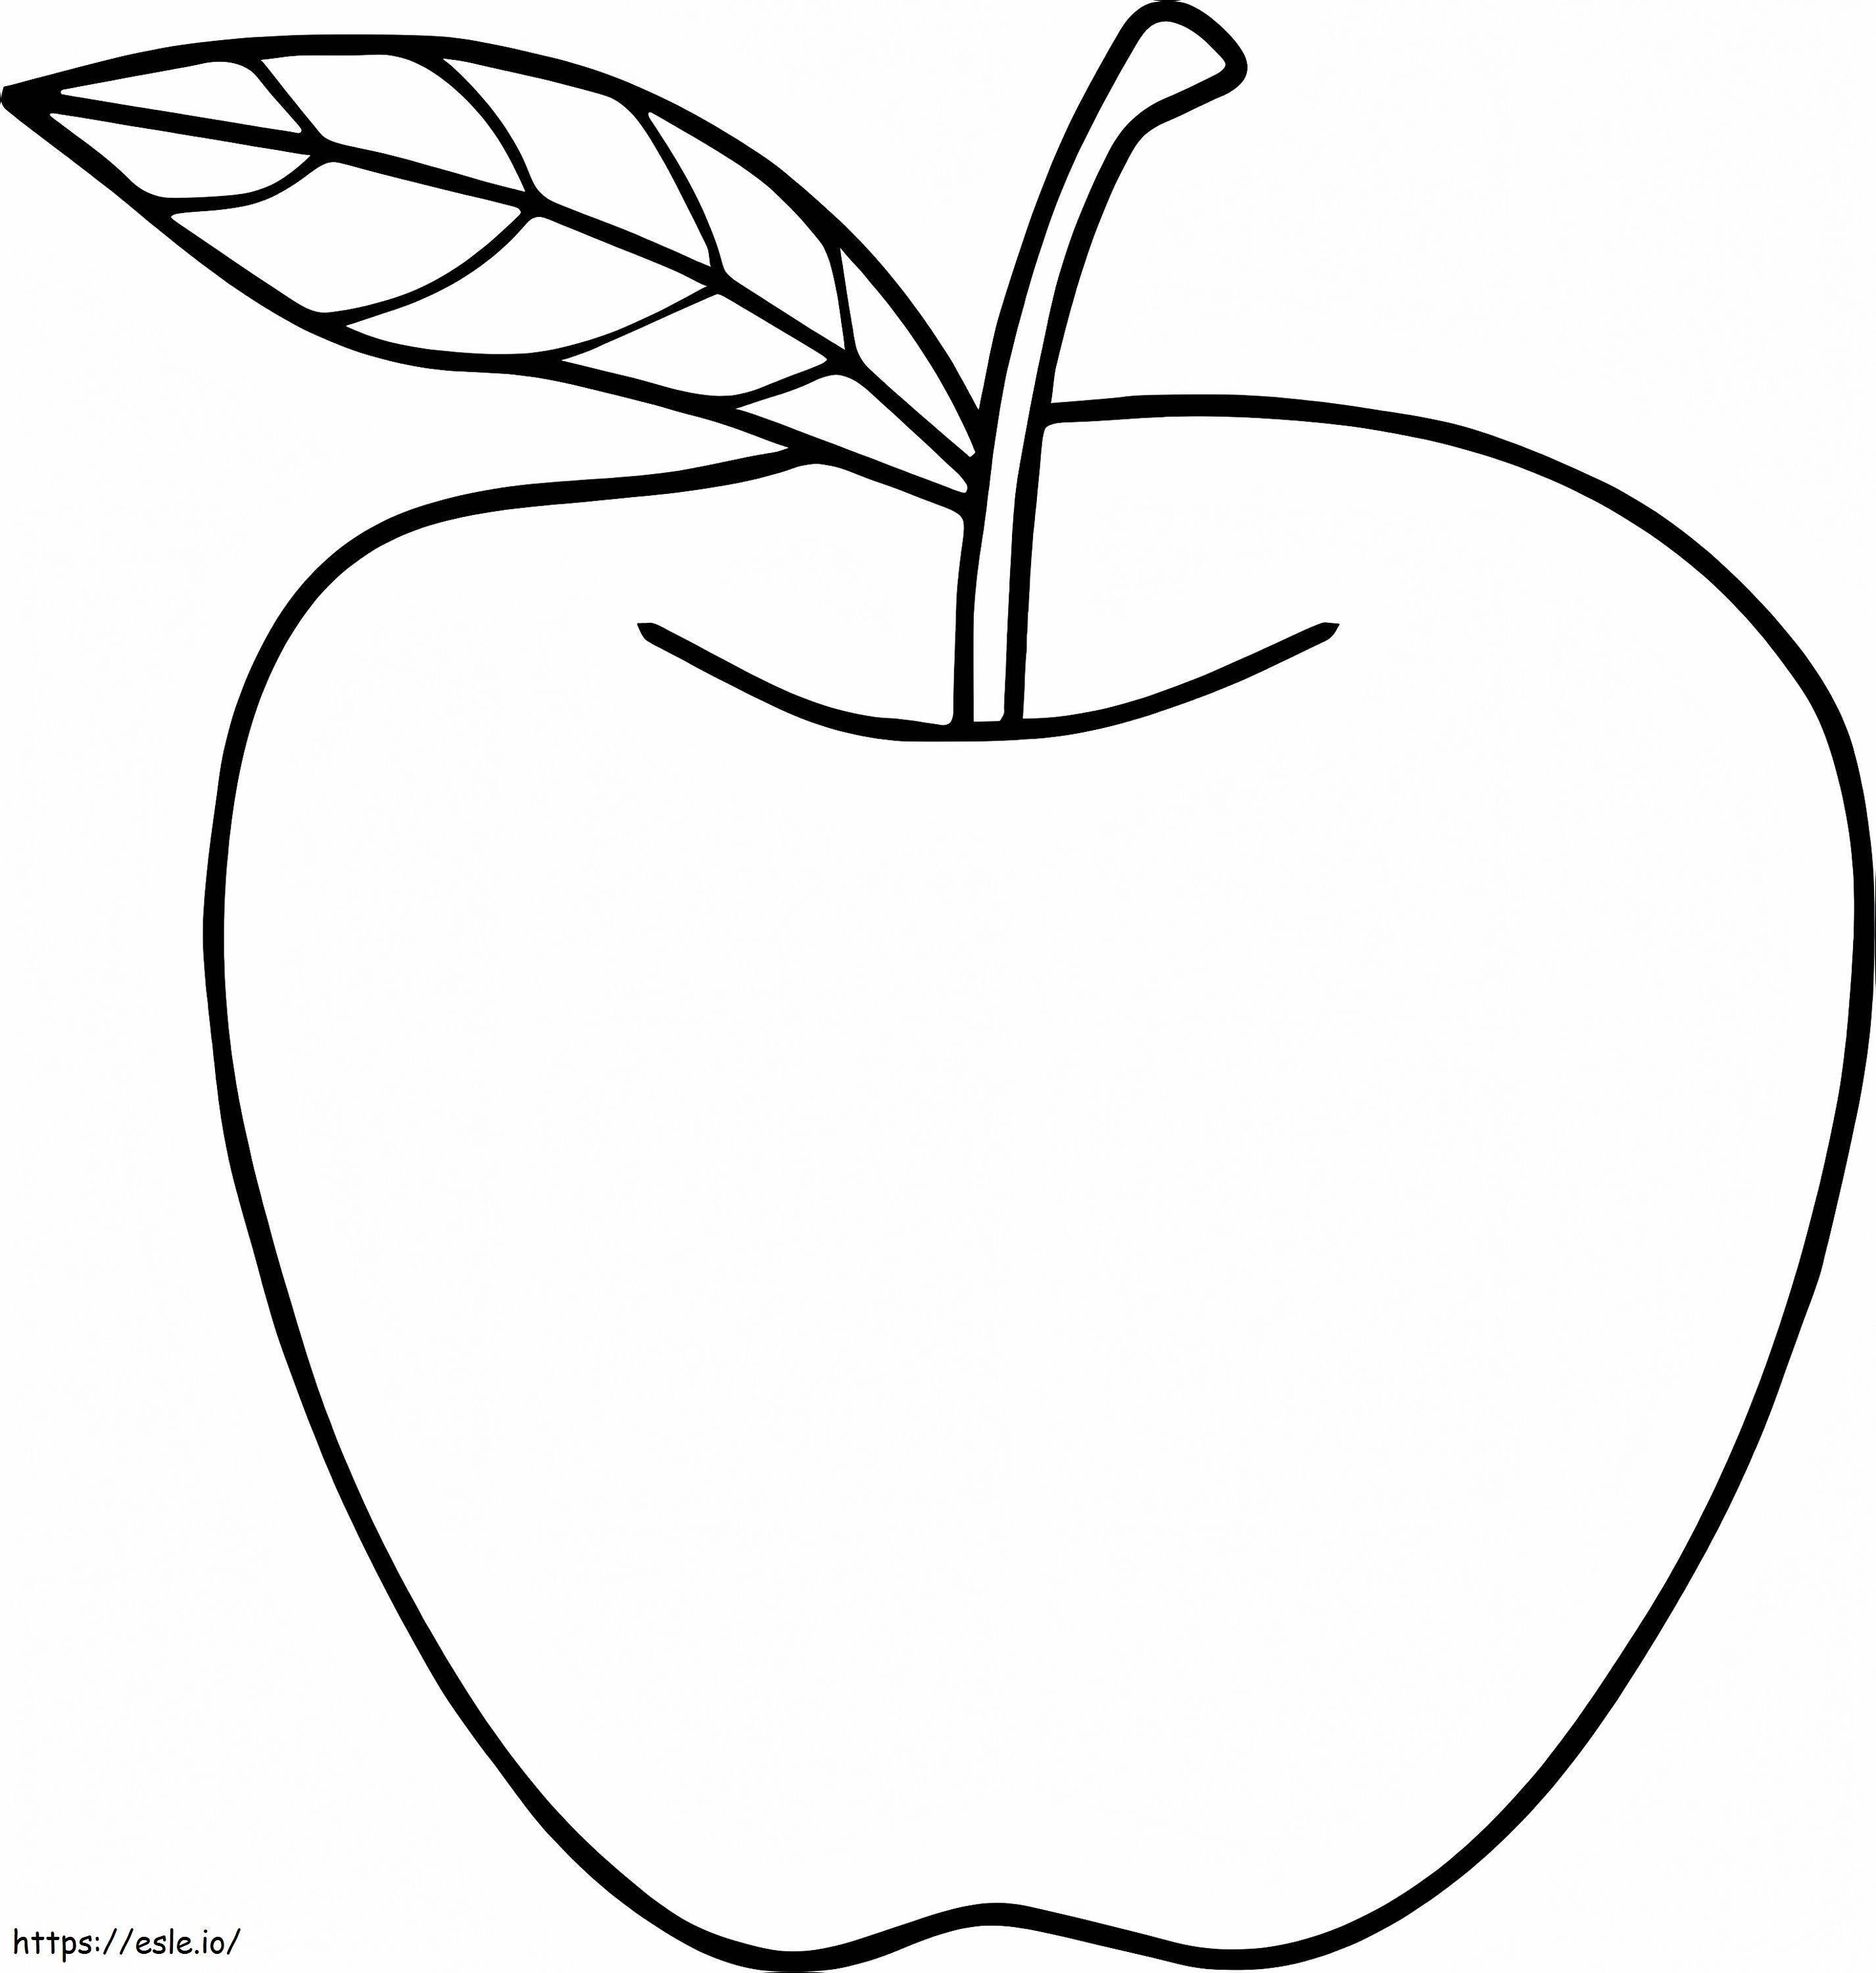 Diseño libre de manzana para colorear